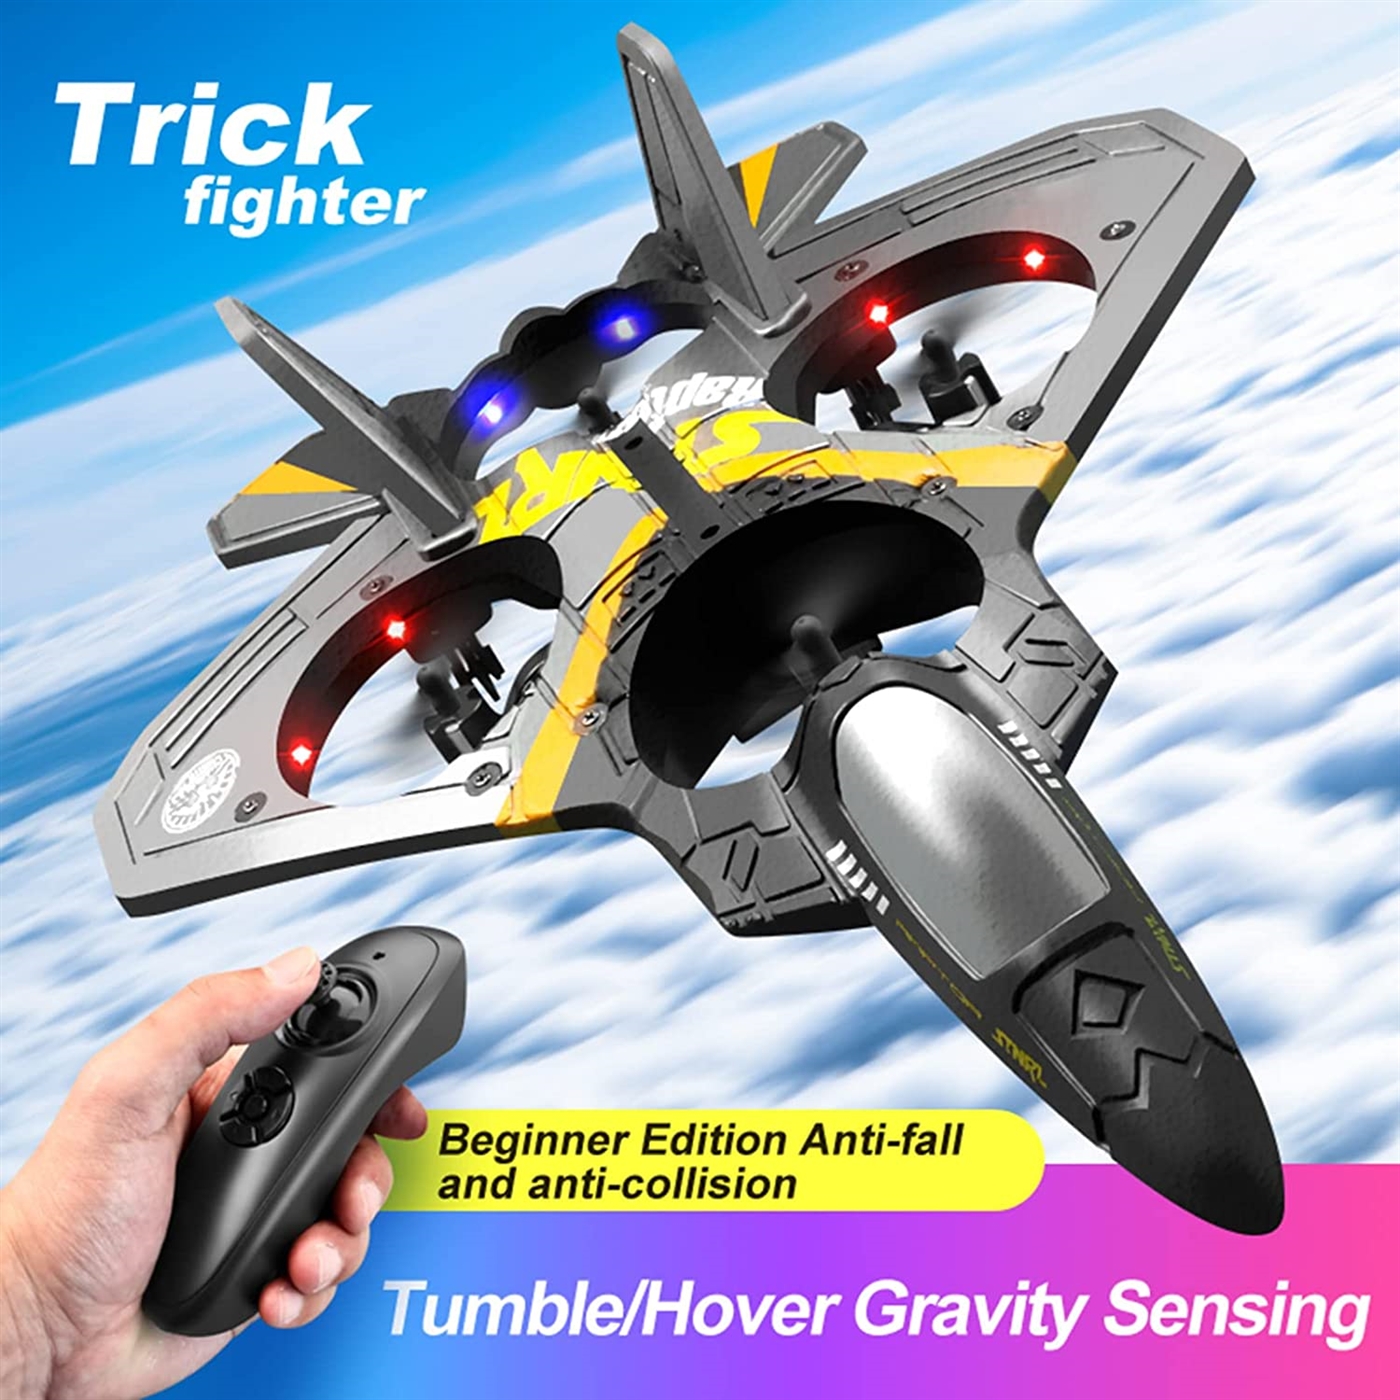 Kibtoy flying toy, 4-motor stunt RC fighter